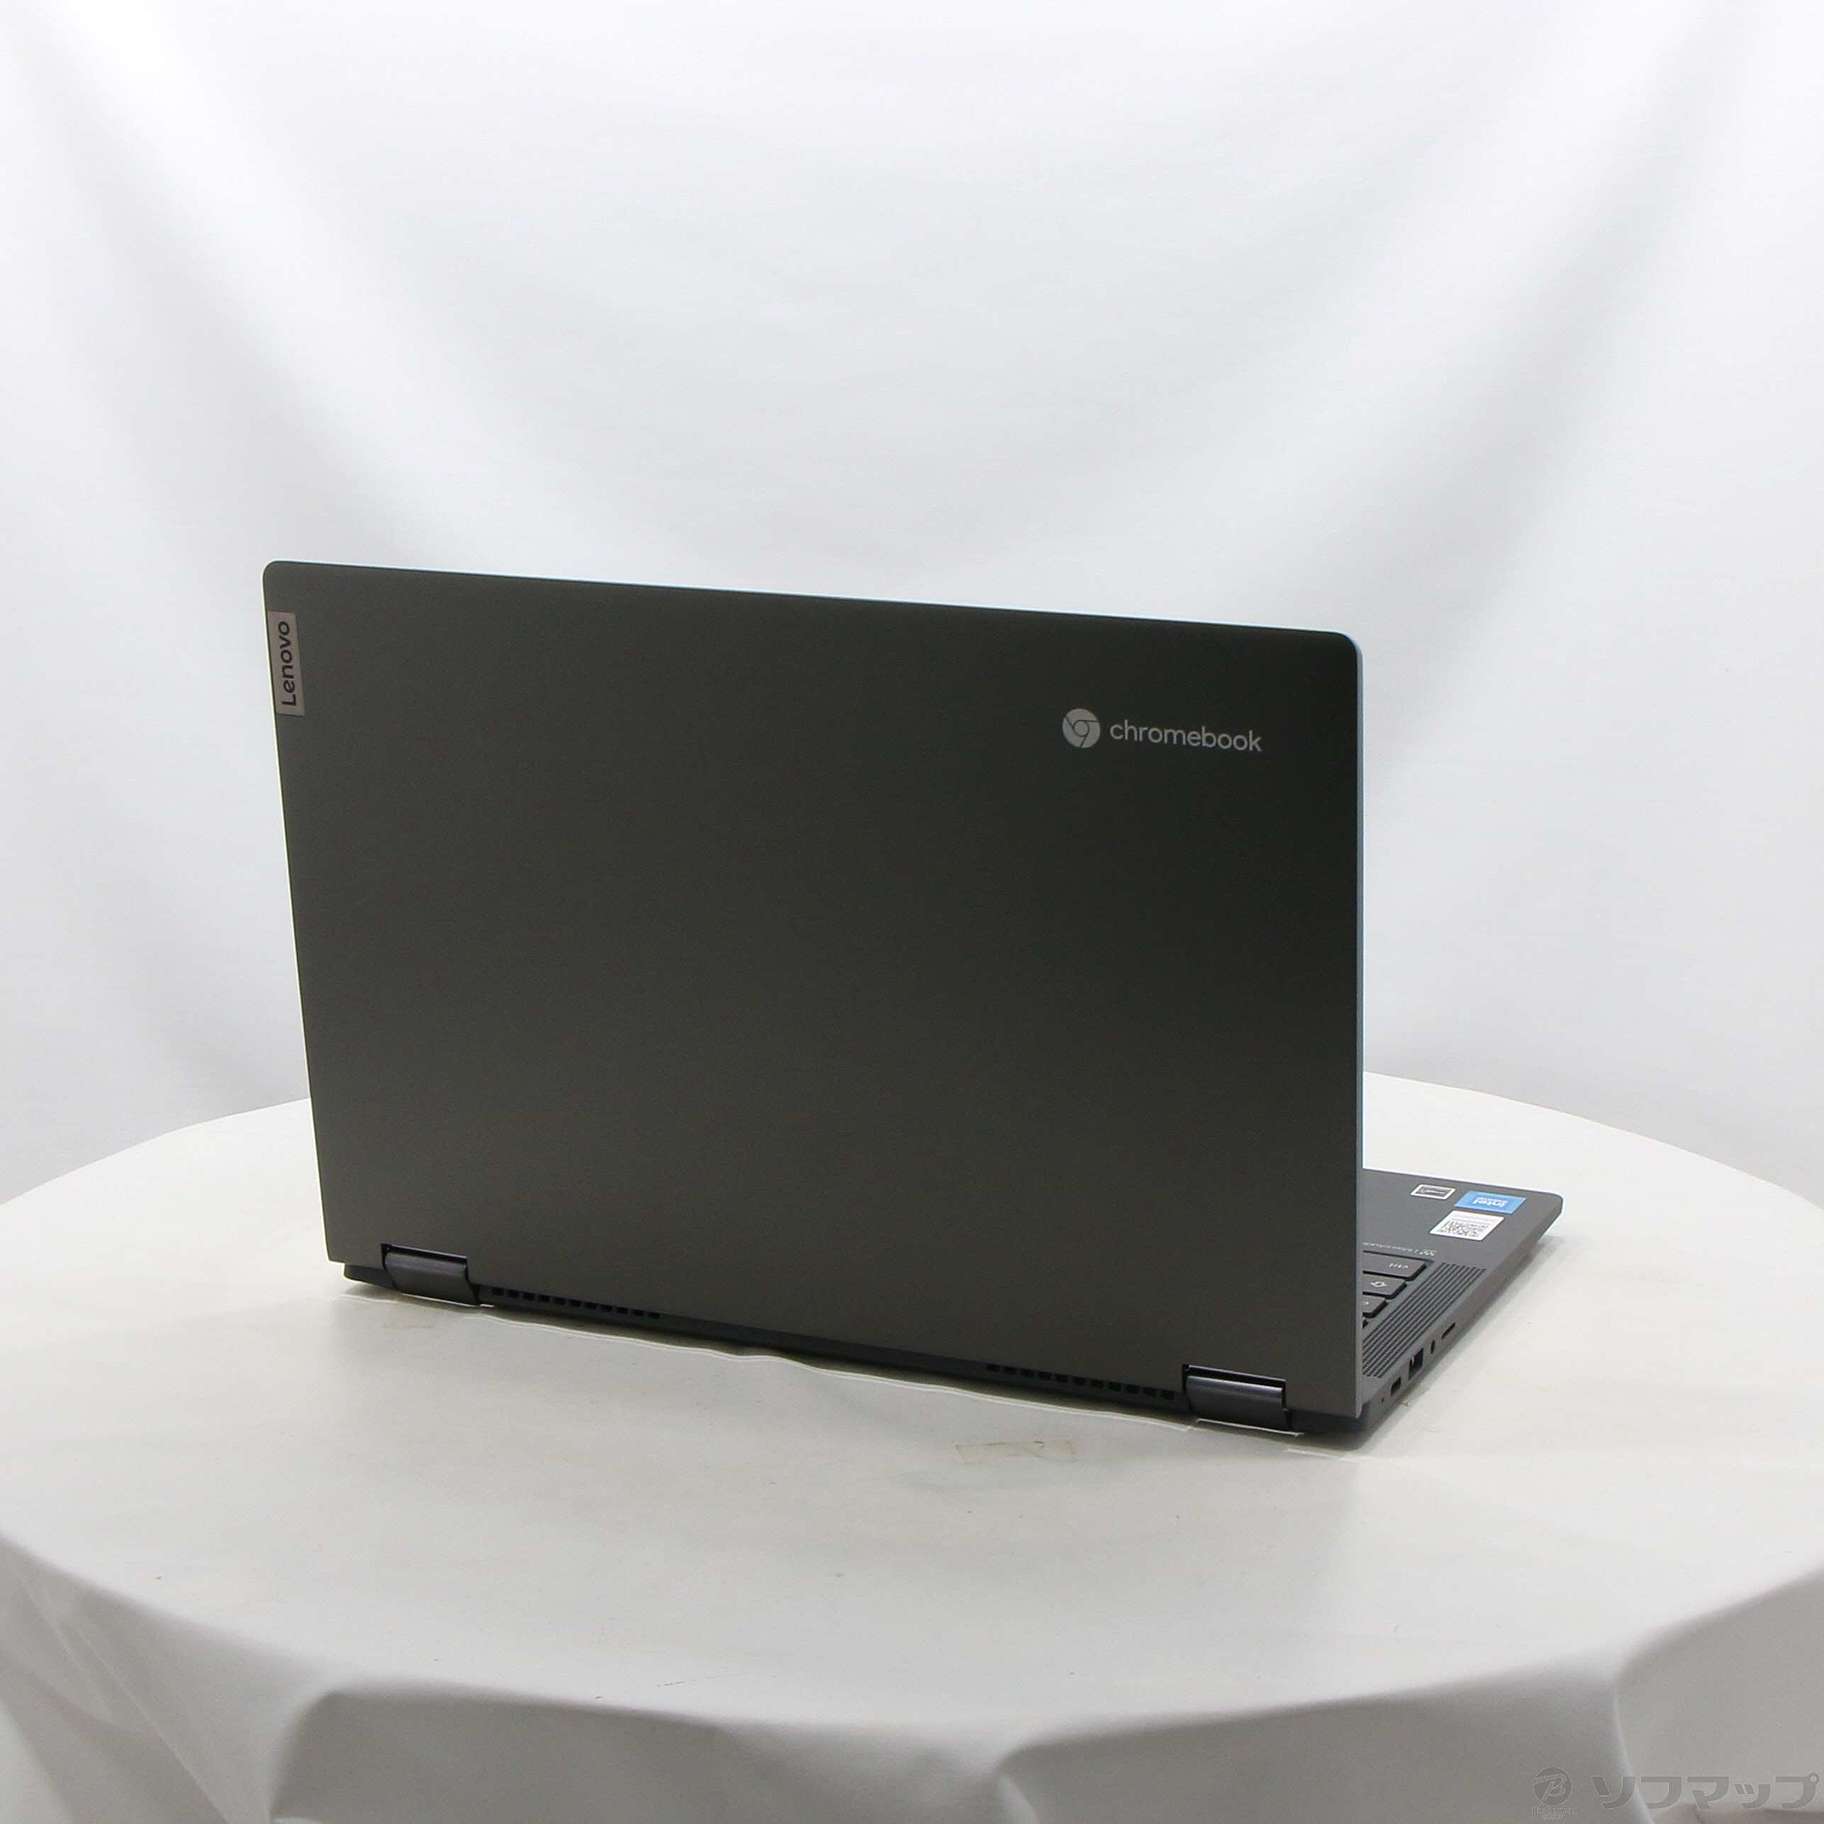 〔展示品〕 IdeaPad Flex 560i Chromebook 82M70024JP アイアングレー